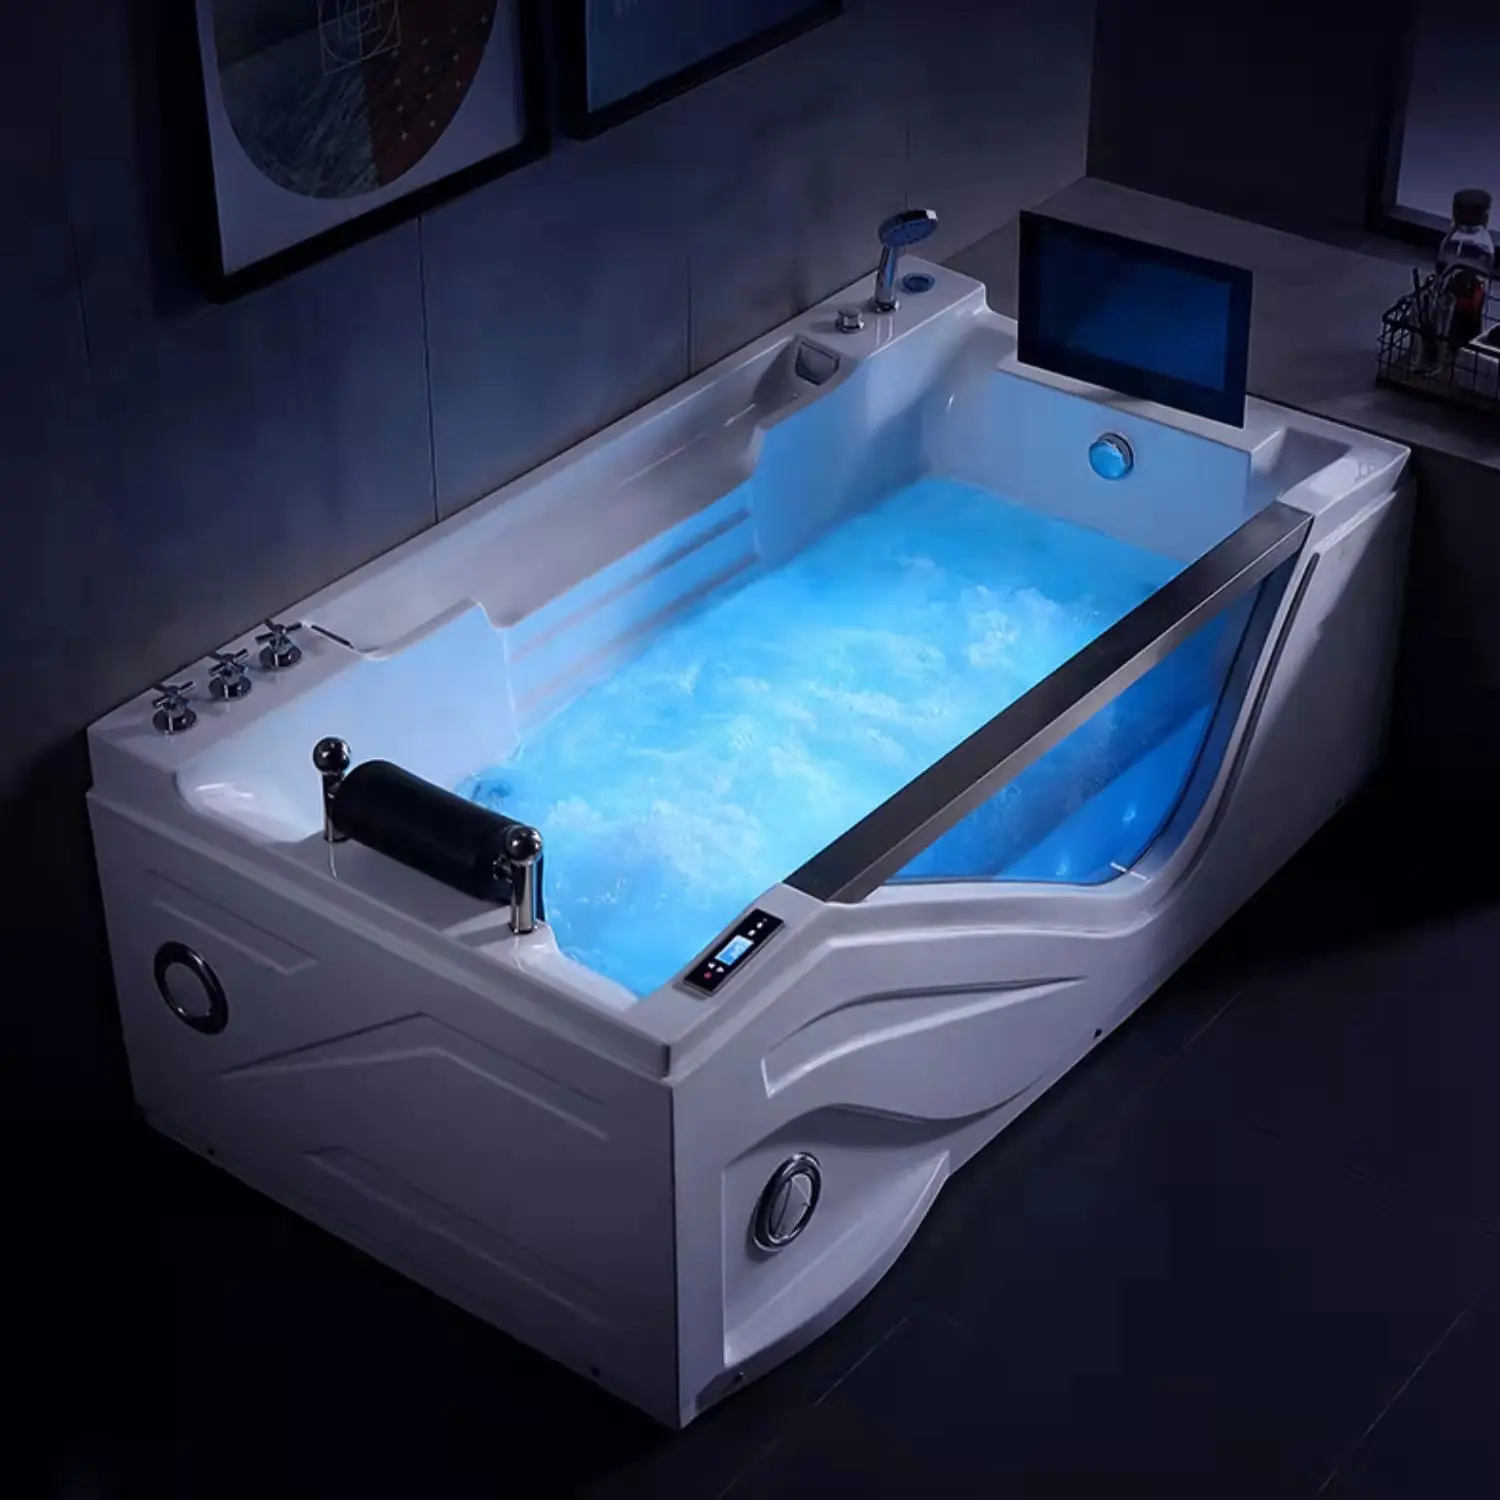 BALISI יוקרה חדש עיצוב לבן צבע אקריליק עם טלוויזיה CE אחת כרית עיסוי אמבטיות & מערבולות למבוגרים אמבטיה